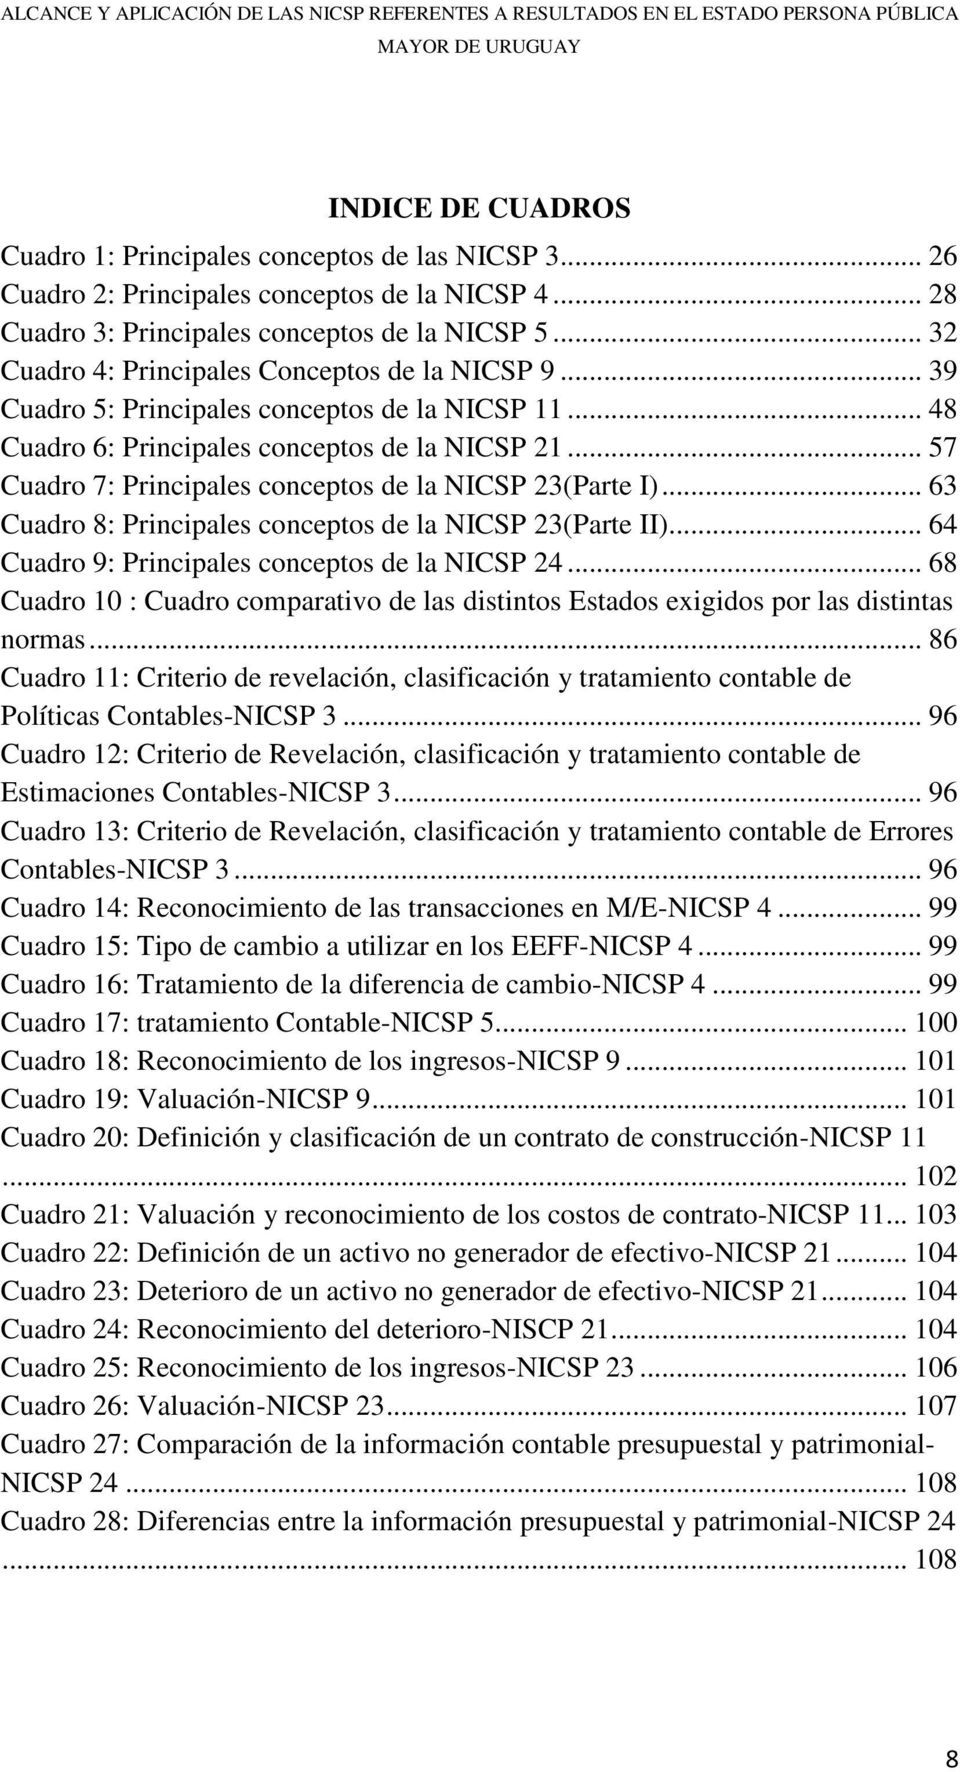 .. 57 Cuadro 7: Principales conceptos de la NICSP 23(Parte I)... 63 Cuadro 8: Principales conceptos de la NICSP 23(Parte II)... 64 Cuadro 9: Principales conceptos de la NICSP 24.